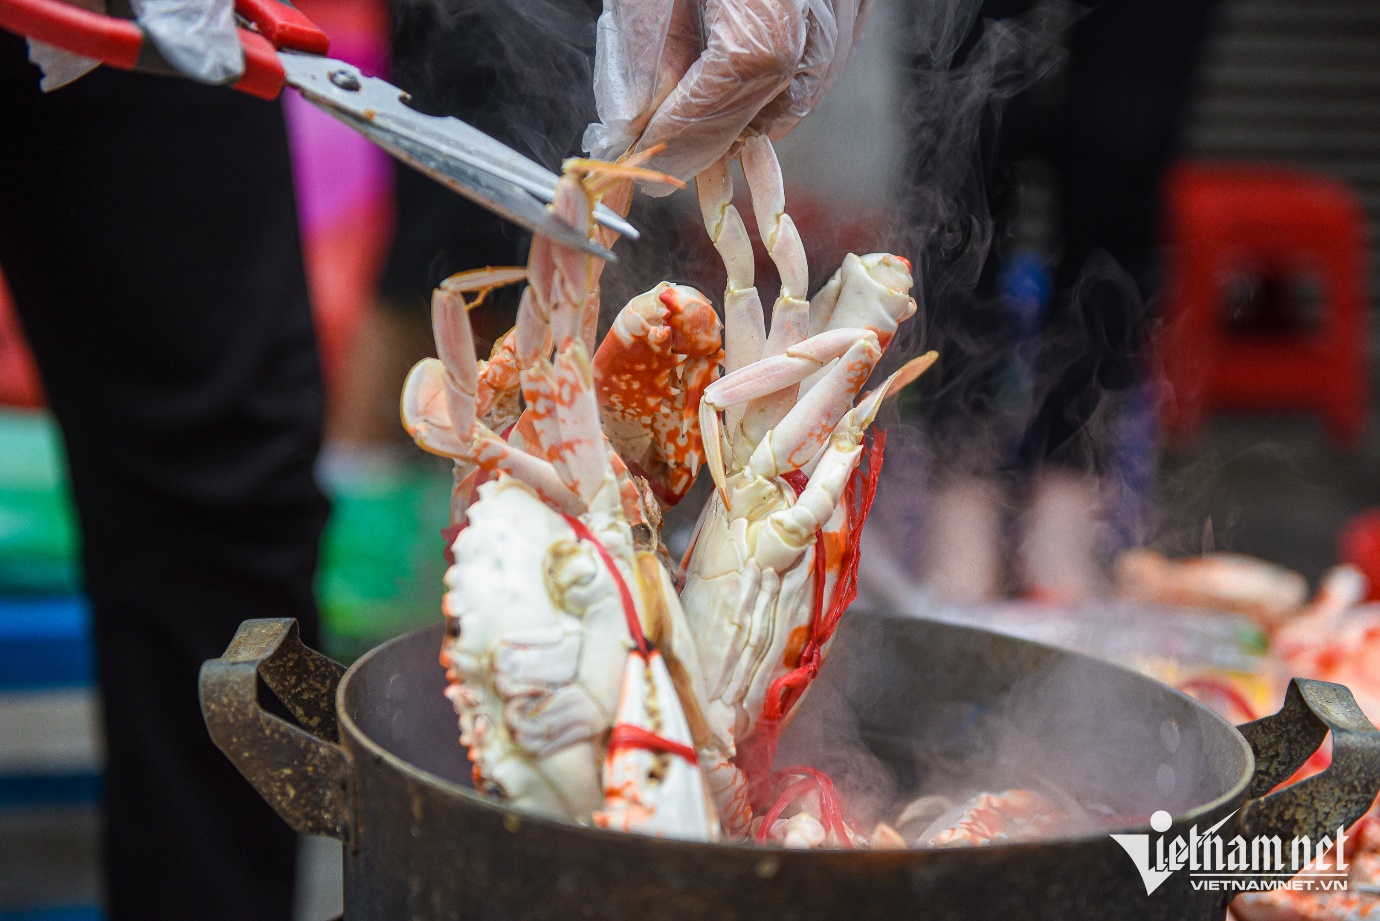 Mẹt ghẹ vỉa hè chợ Đồng Xuân của cụ bà U70, ngày thu đến 20 triệu đồng - 11